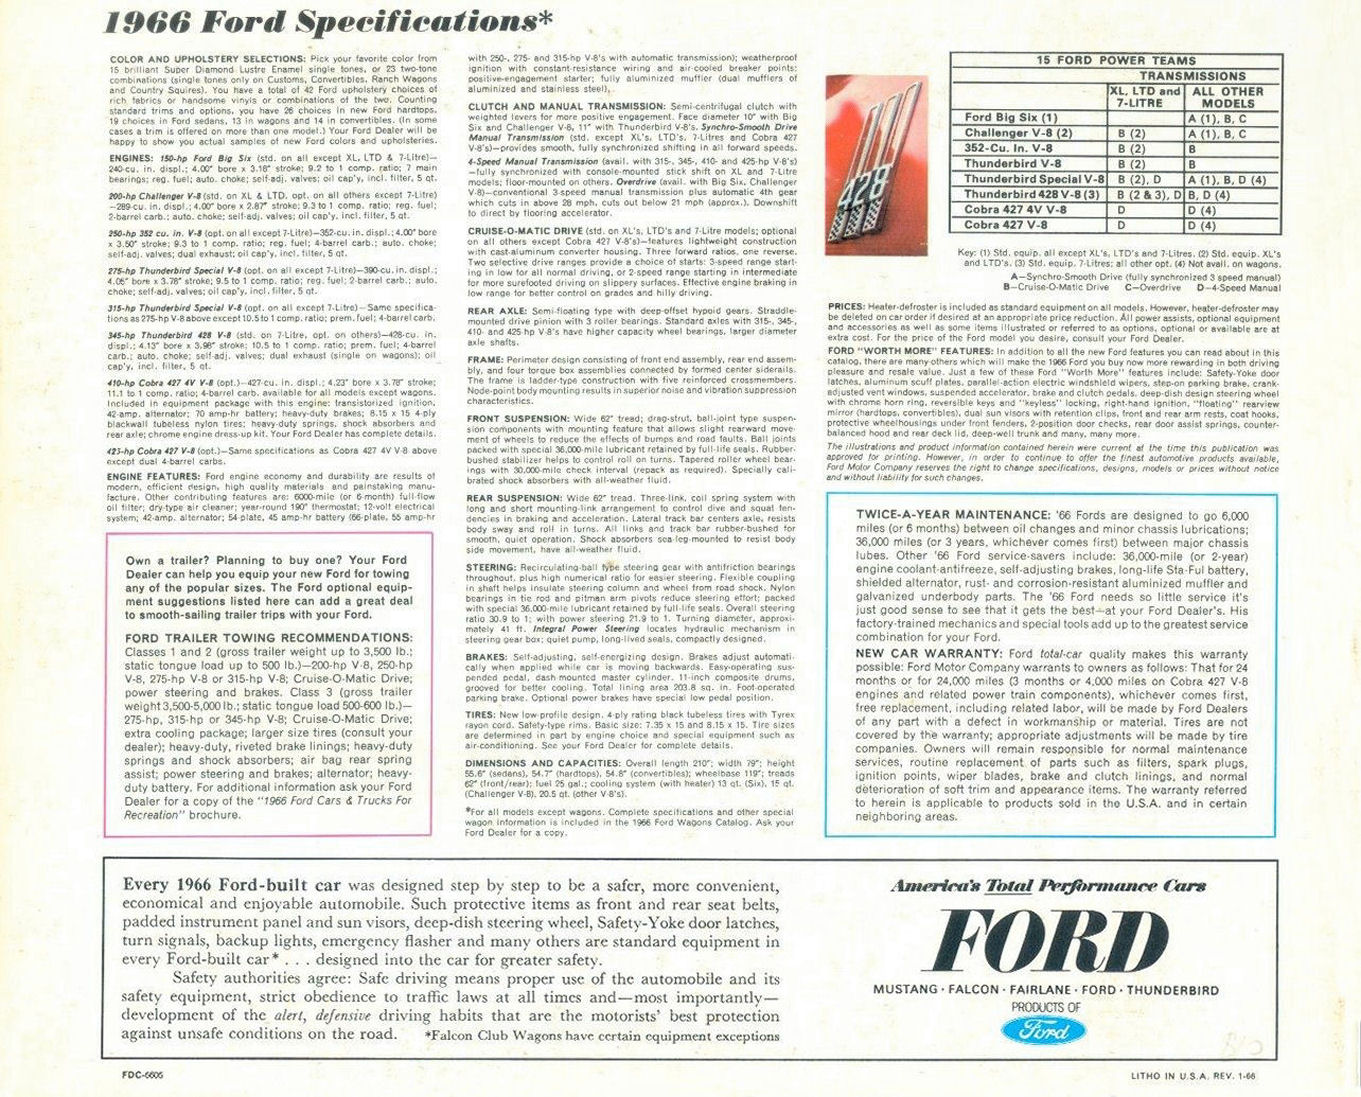 n_1966 Ford Full Size (Rev)-24.jpg